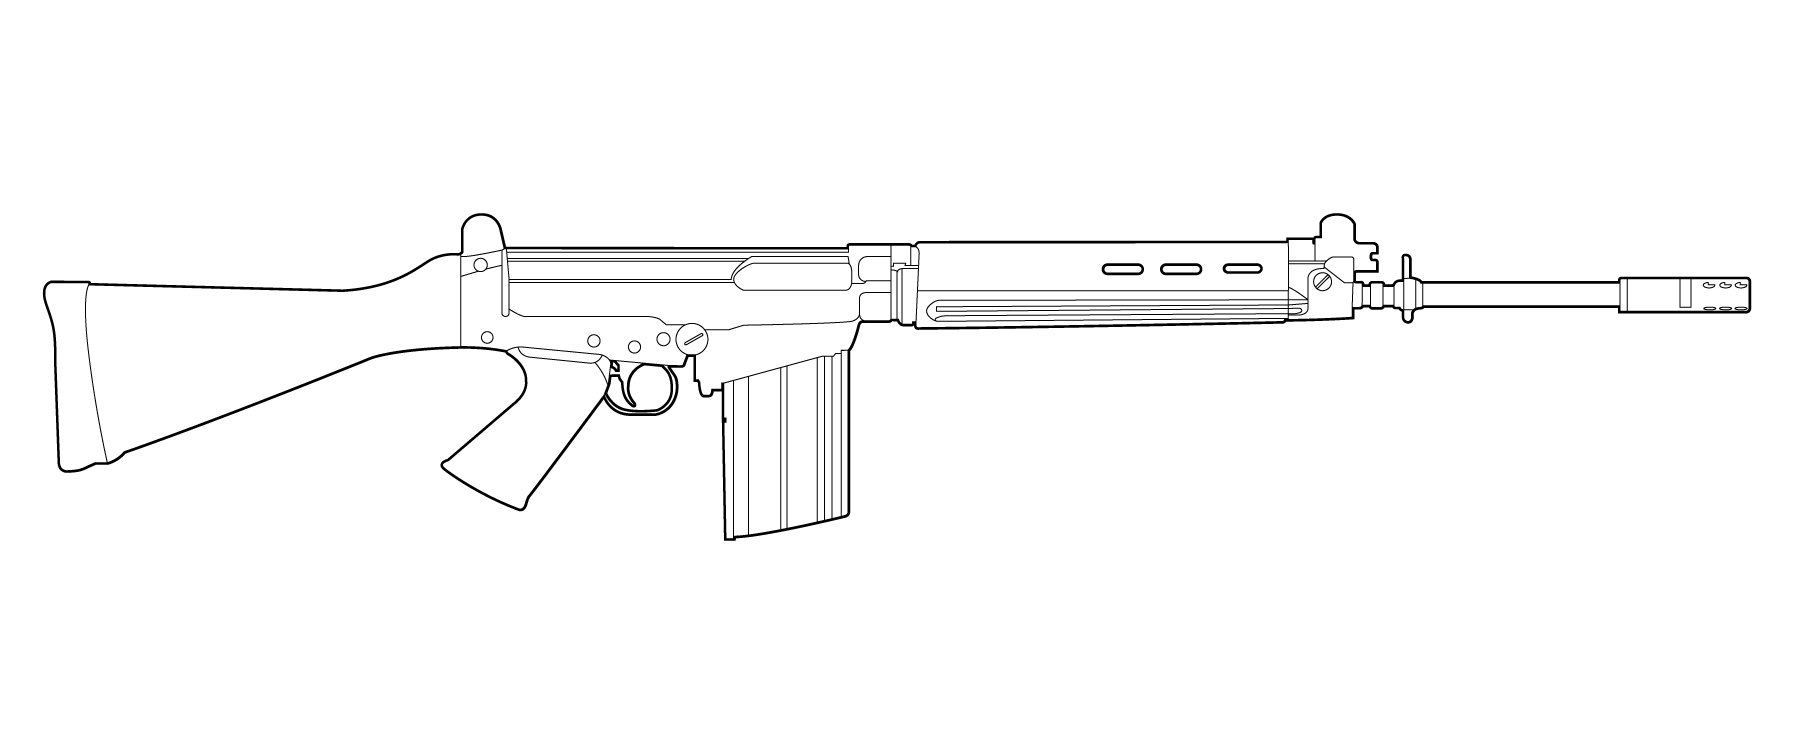 М416 автомат чертеж. FN fal чертеж. Автомат м16 чертеж. М40 винтовка чертеж. Раскраска стандофф оружие